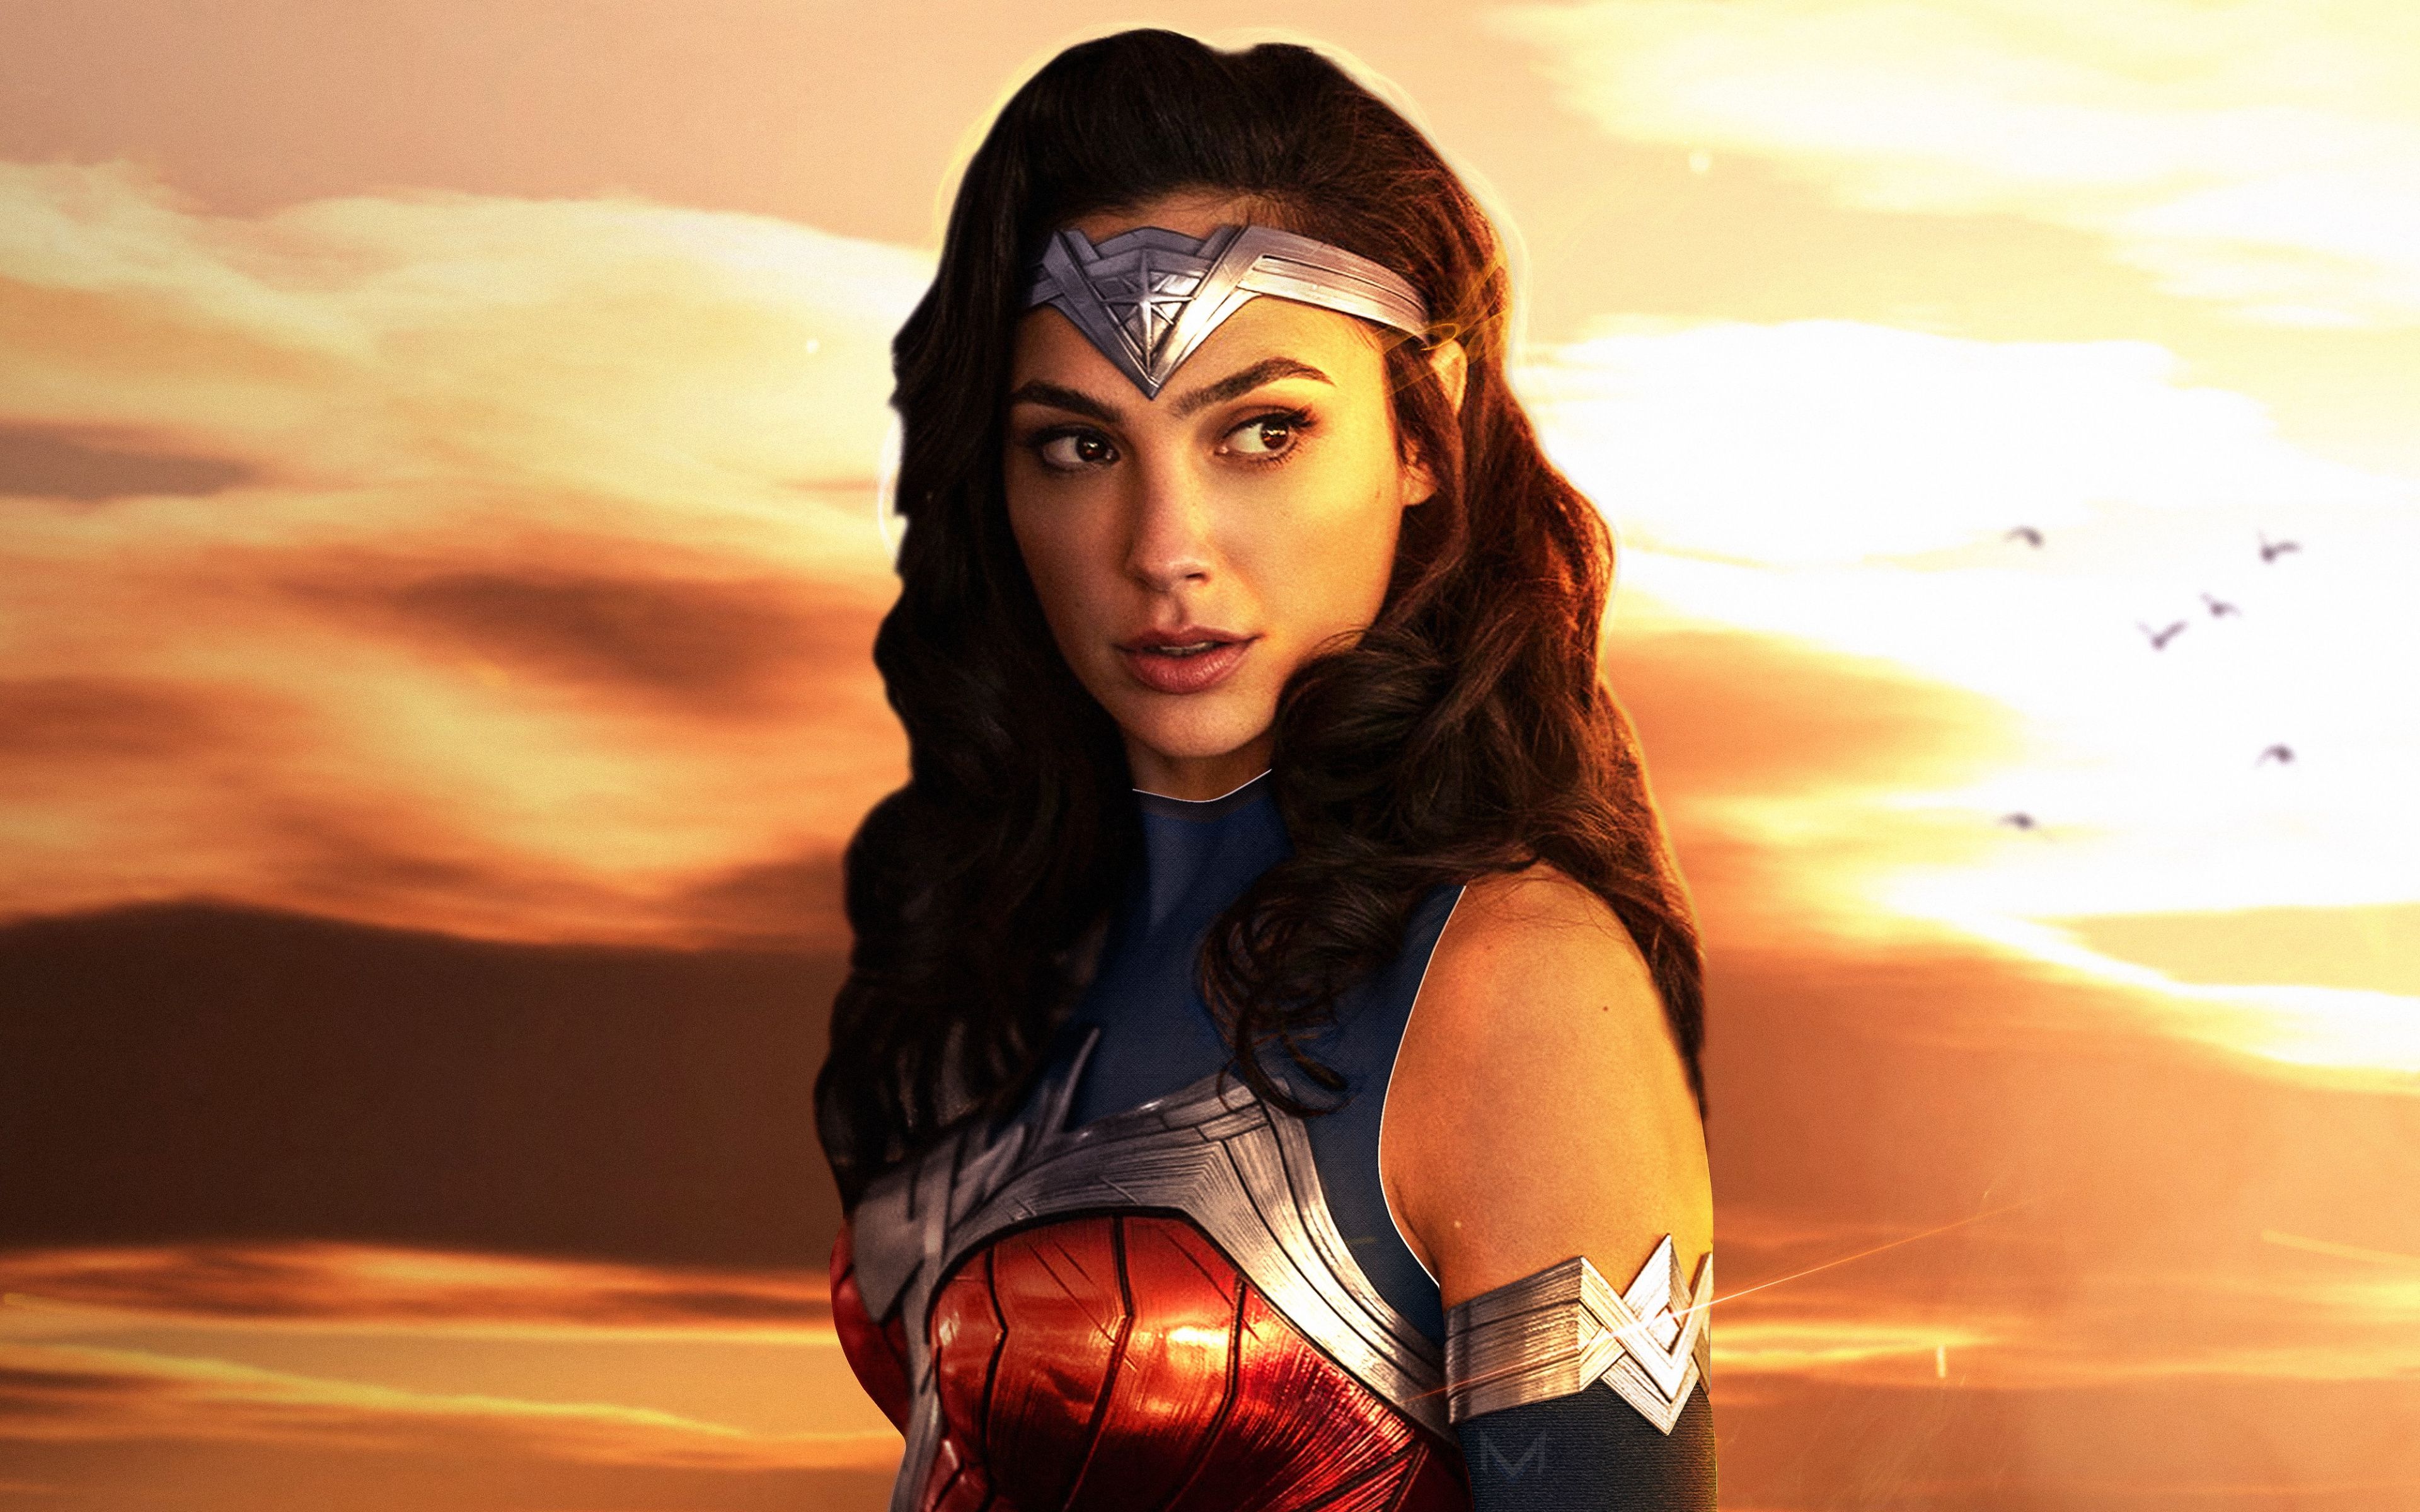 Download 2019 movie, Wonder Woman 1984, Gal Gadot, art wallpaper, 3840x2400, 4K Ultra HD 16:10, Widescreen